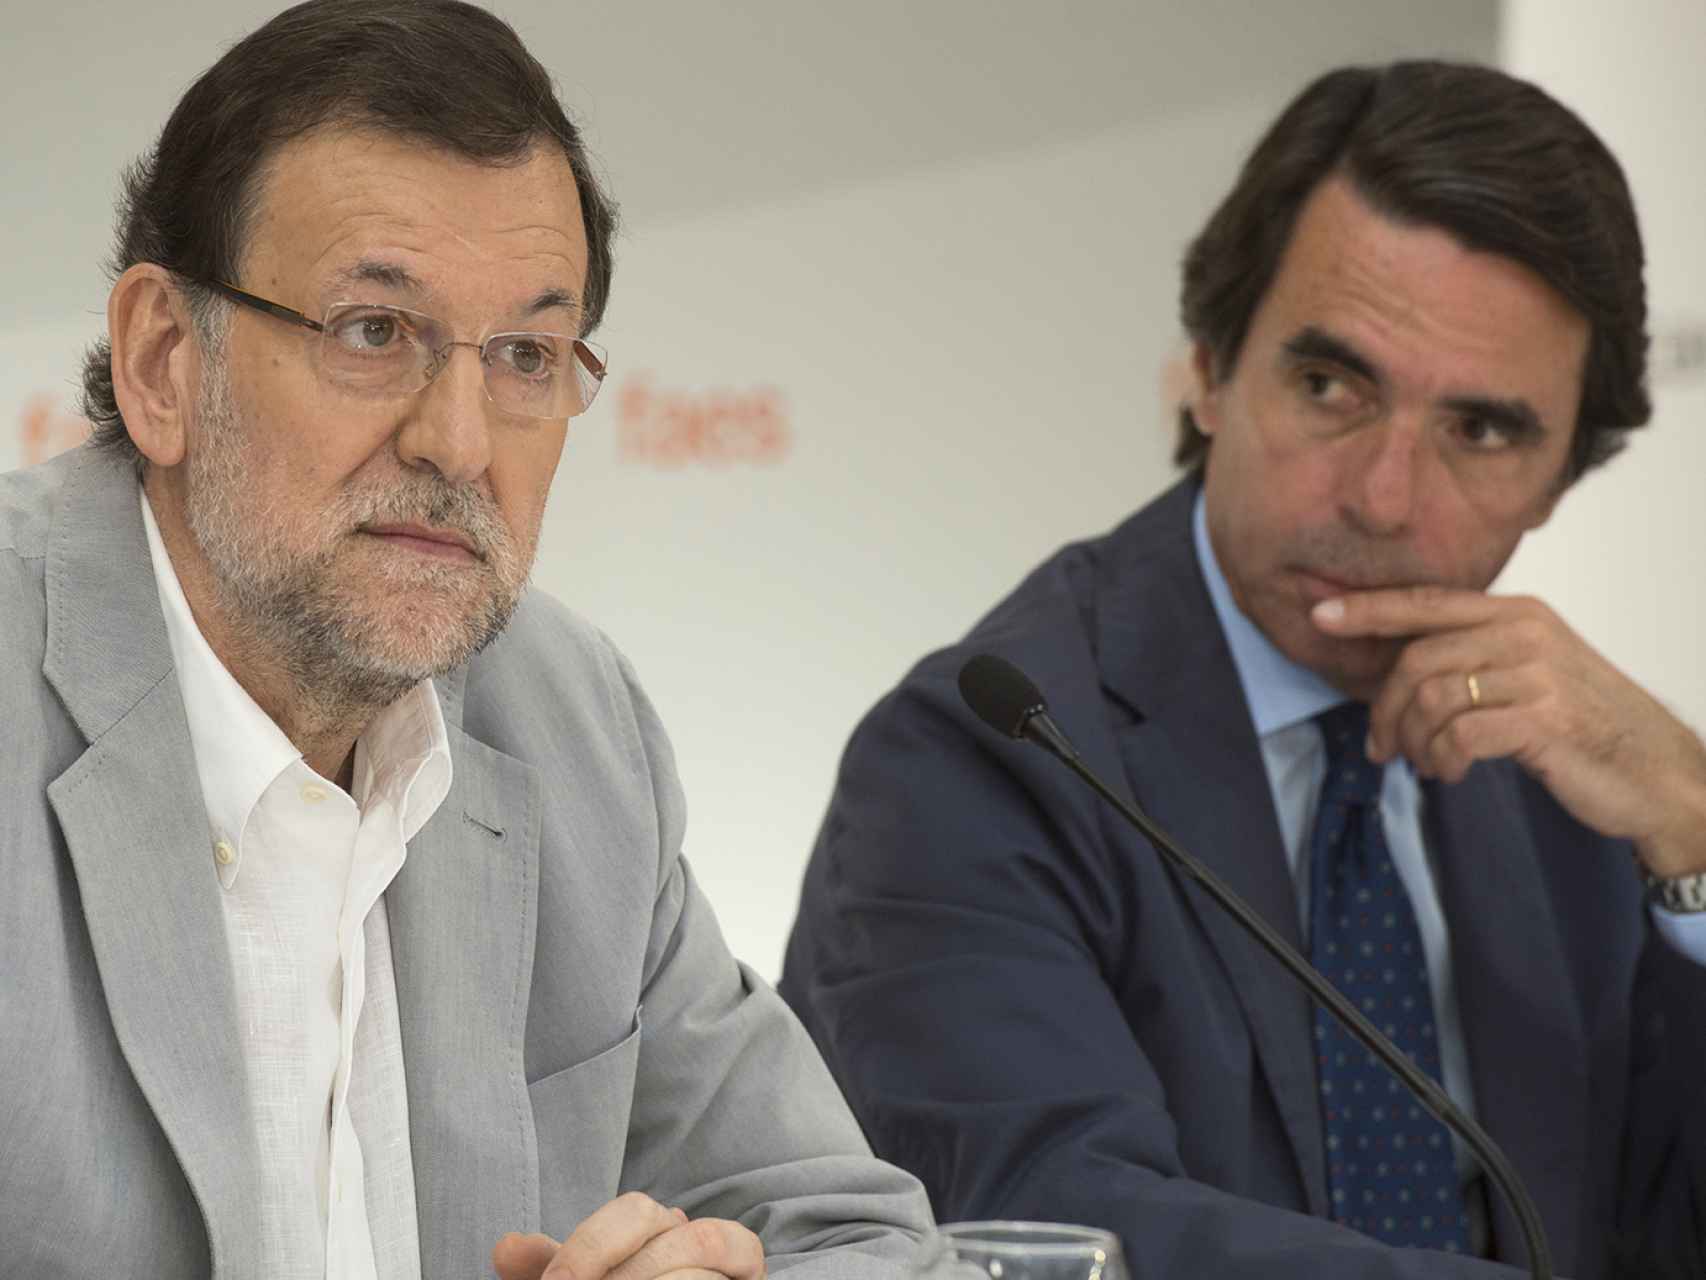 Aznar y Rajoy, en uno de sus últimos encuentros públicos juntos.